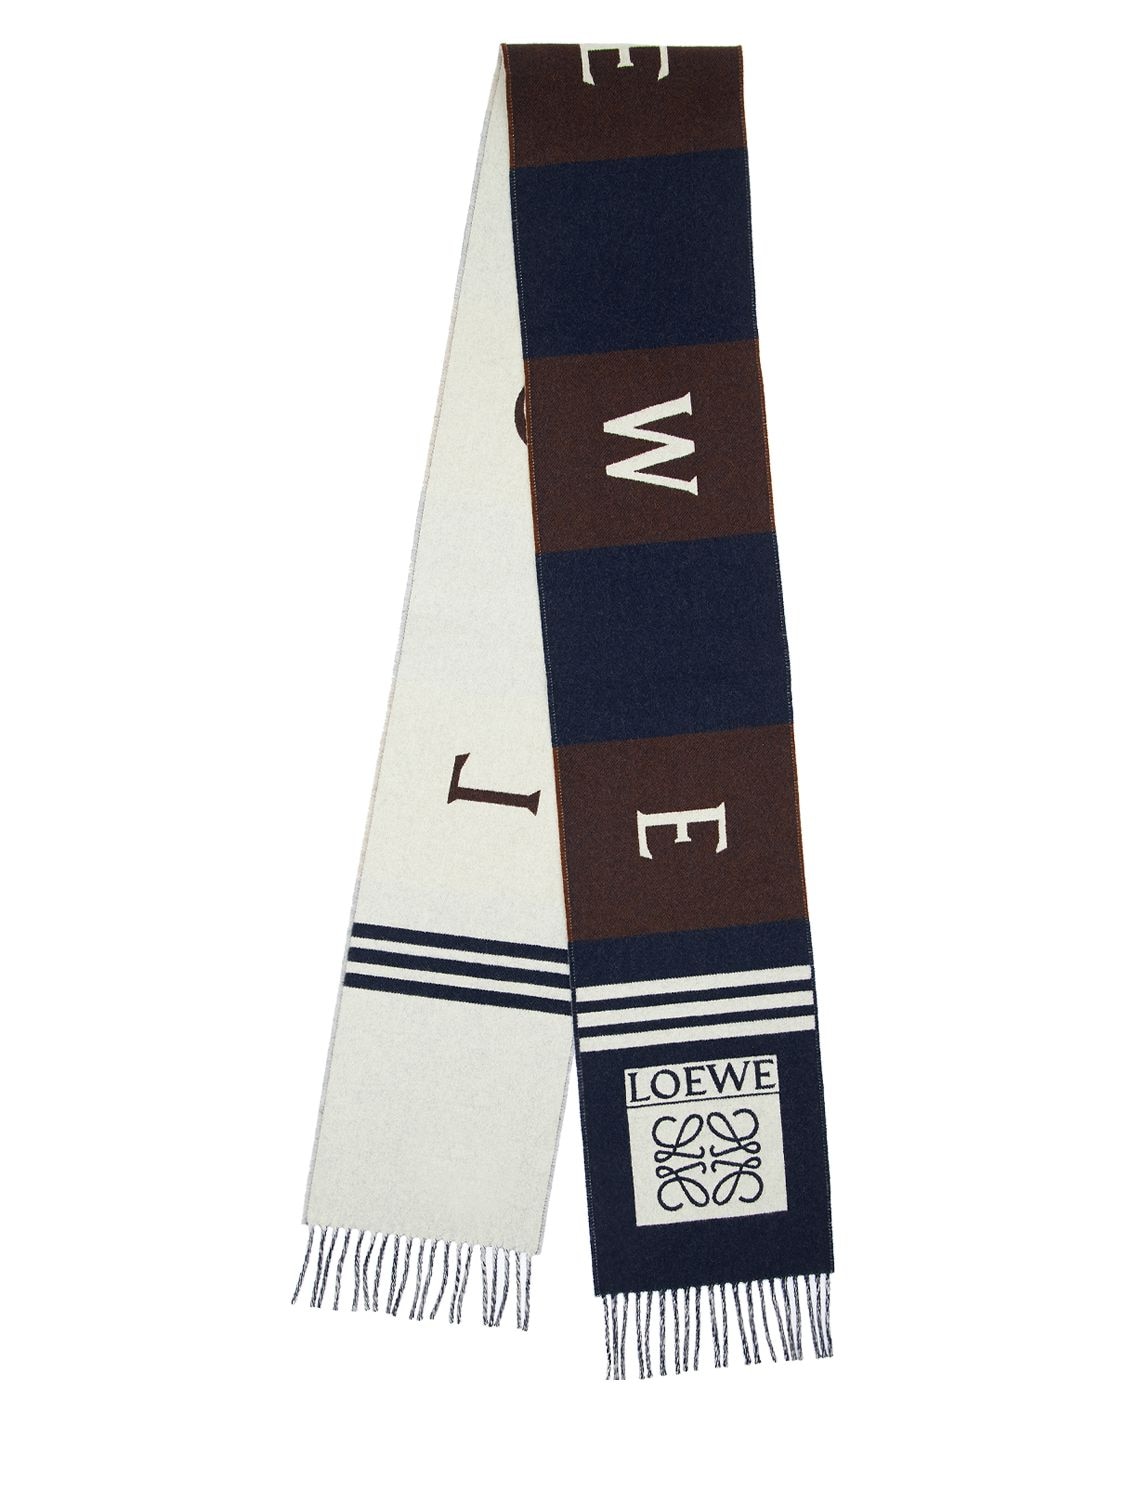 Loewe Logo Football Wool & Cashmere Scarf In Navy Blue,brown